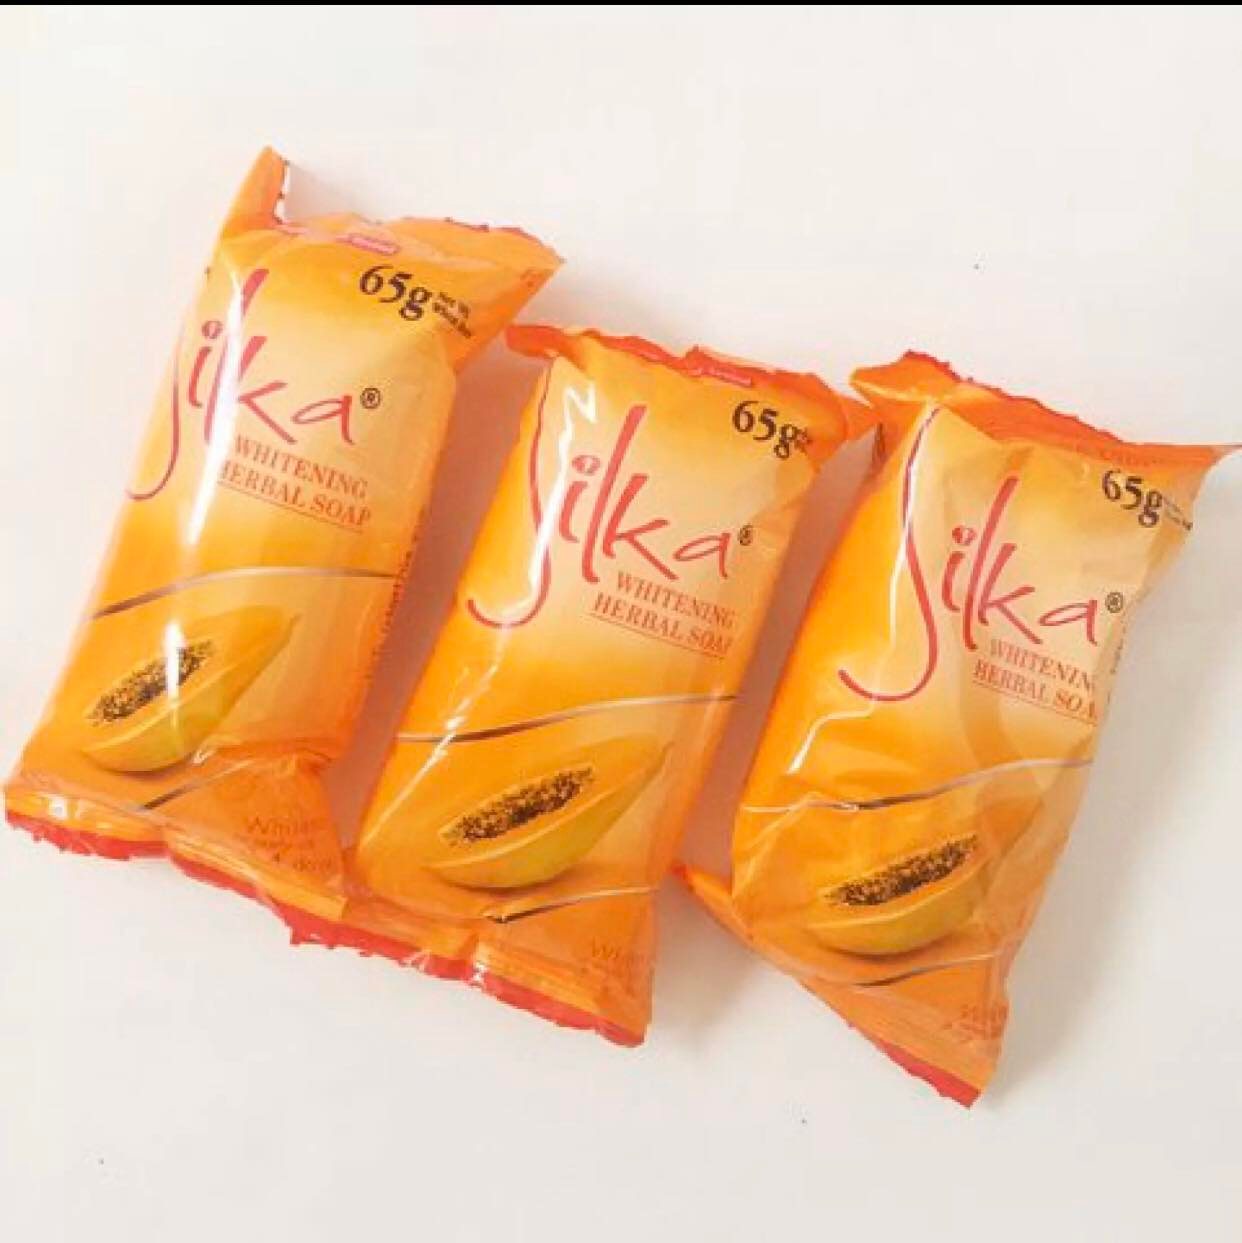 silka papaya soap sachet